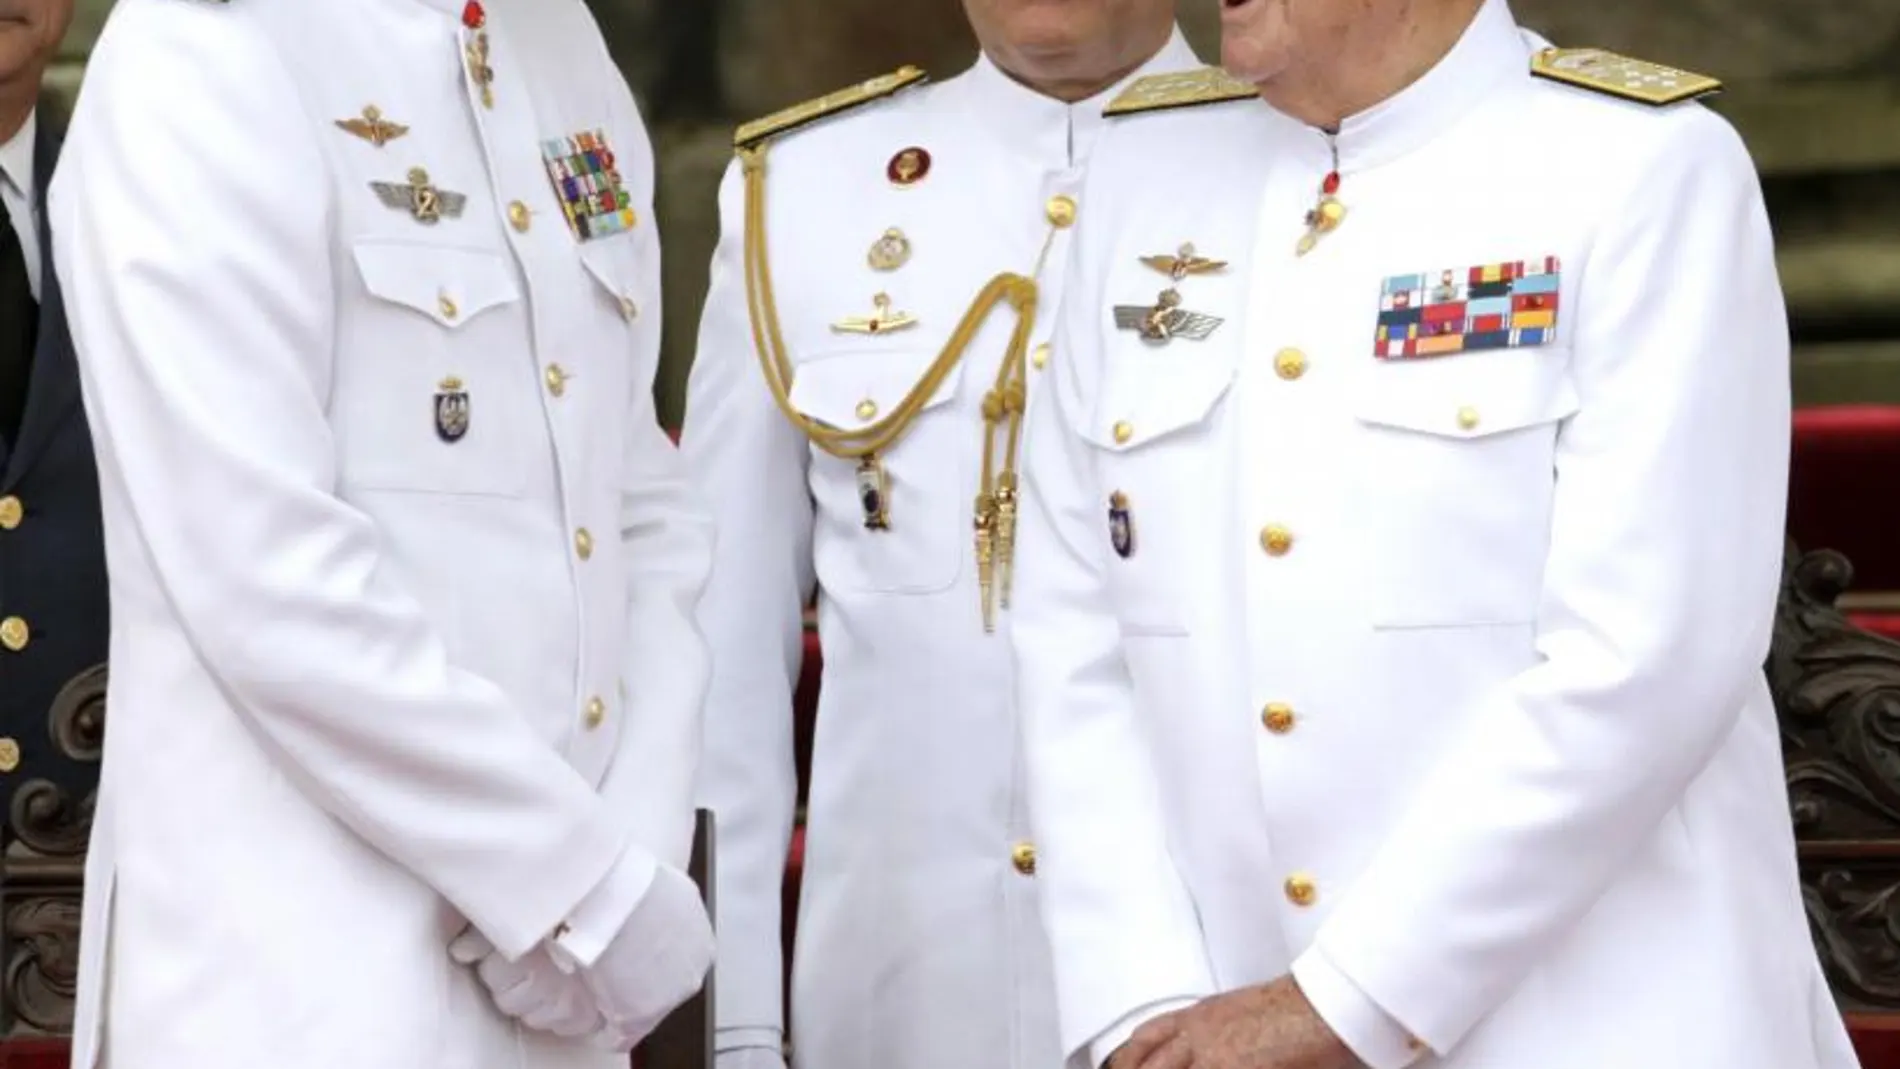 El Rey Felipe VI y su padre, Don Juan Carlos, presiden el desfile dentro de los actos del 300 aniversario de la Real Compañía de Guardiamarinas